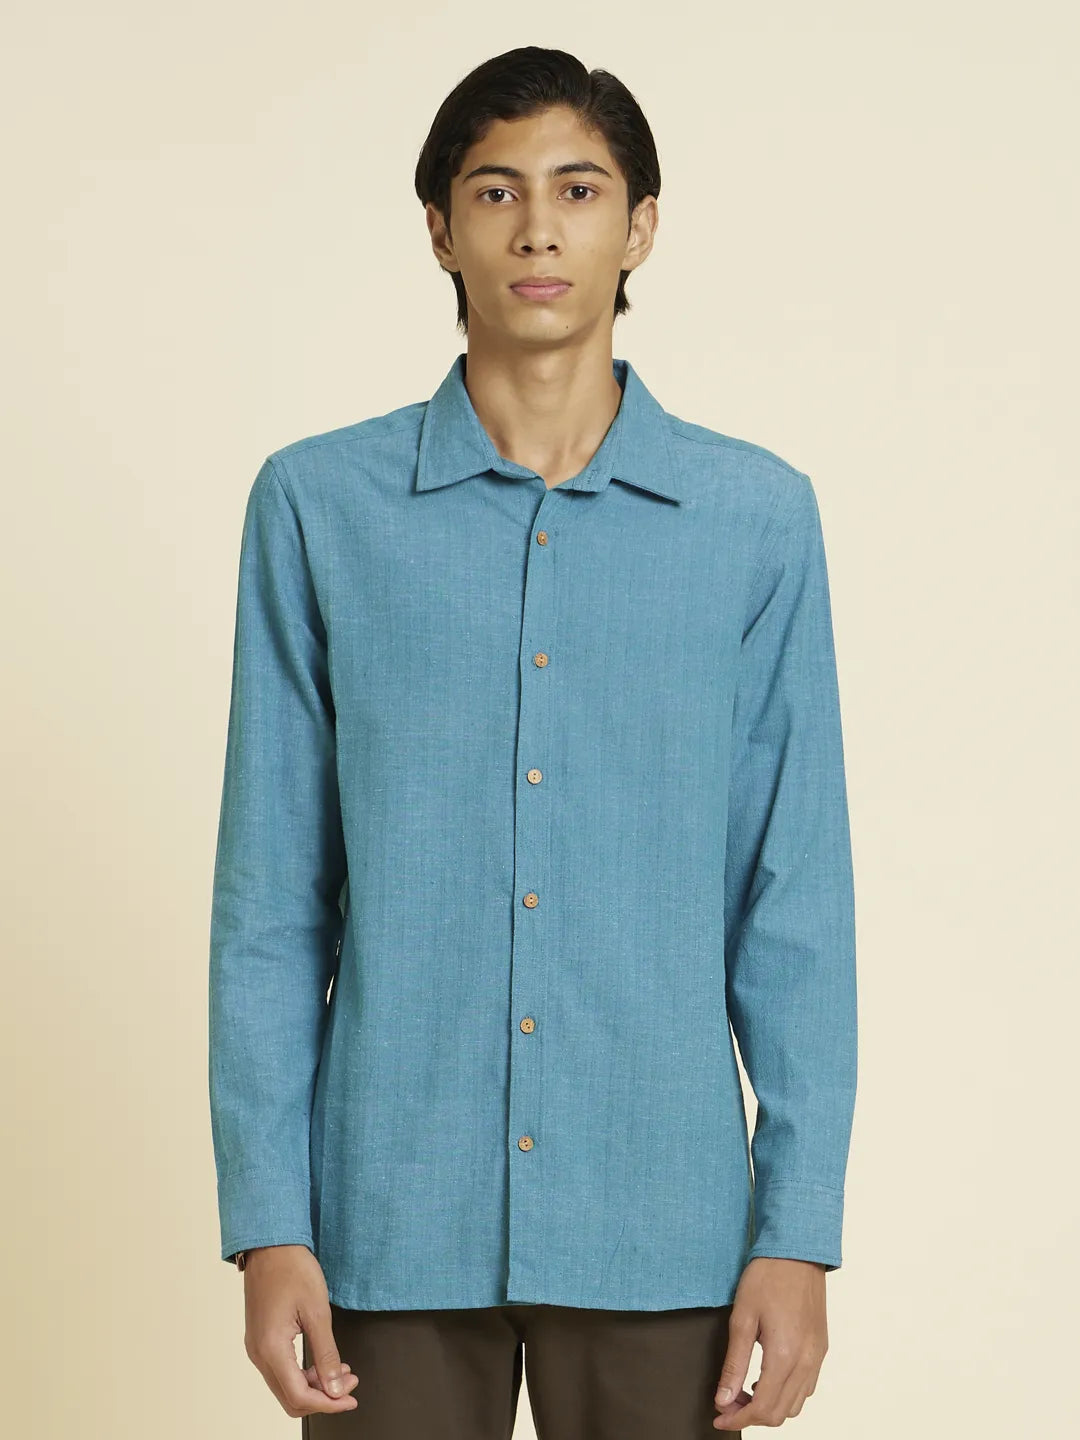 Serene Bondi Blue Handloom Shirt